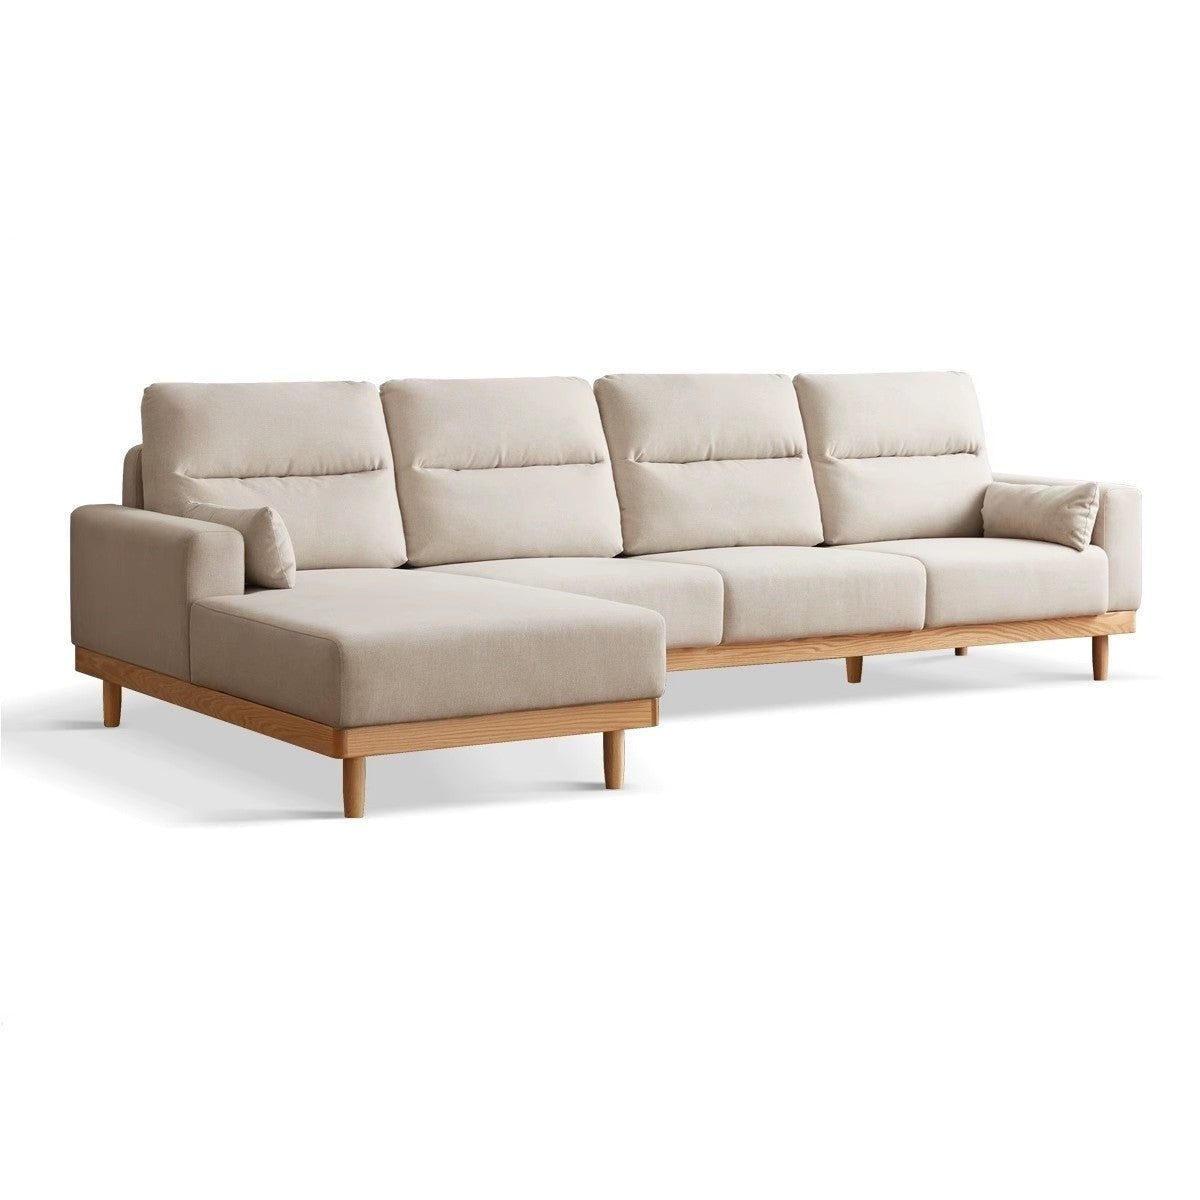 Oak solid wood corner sofa)